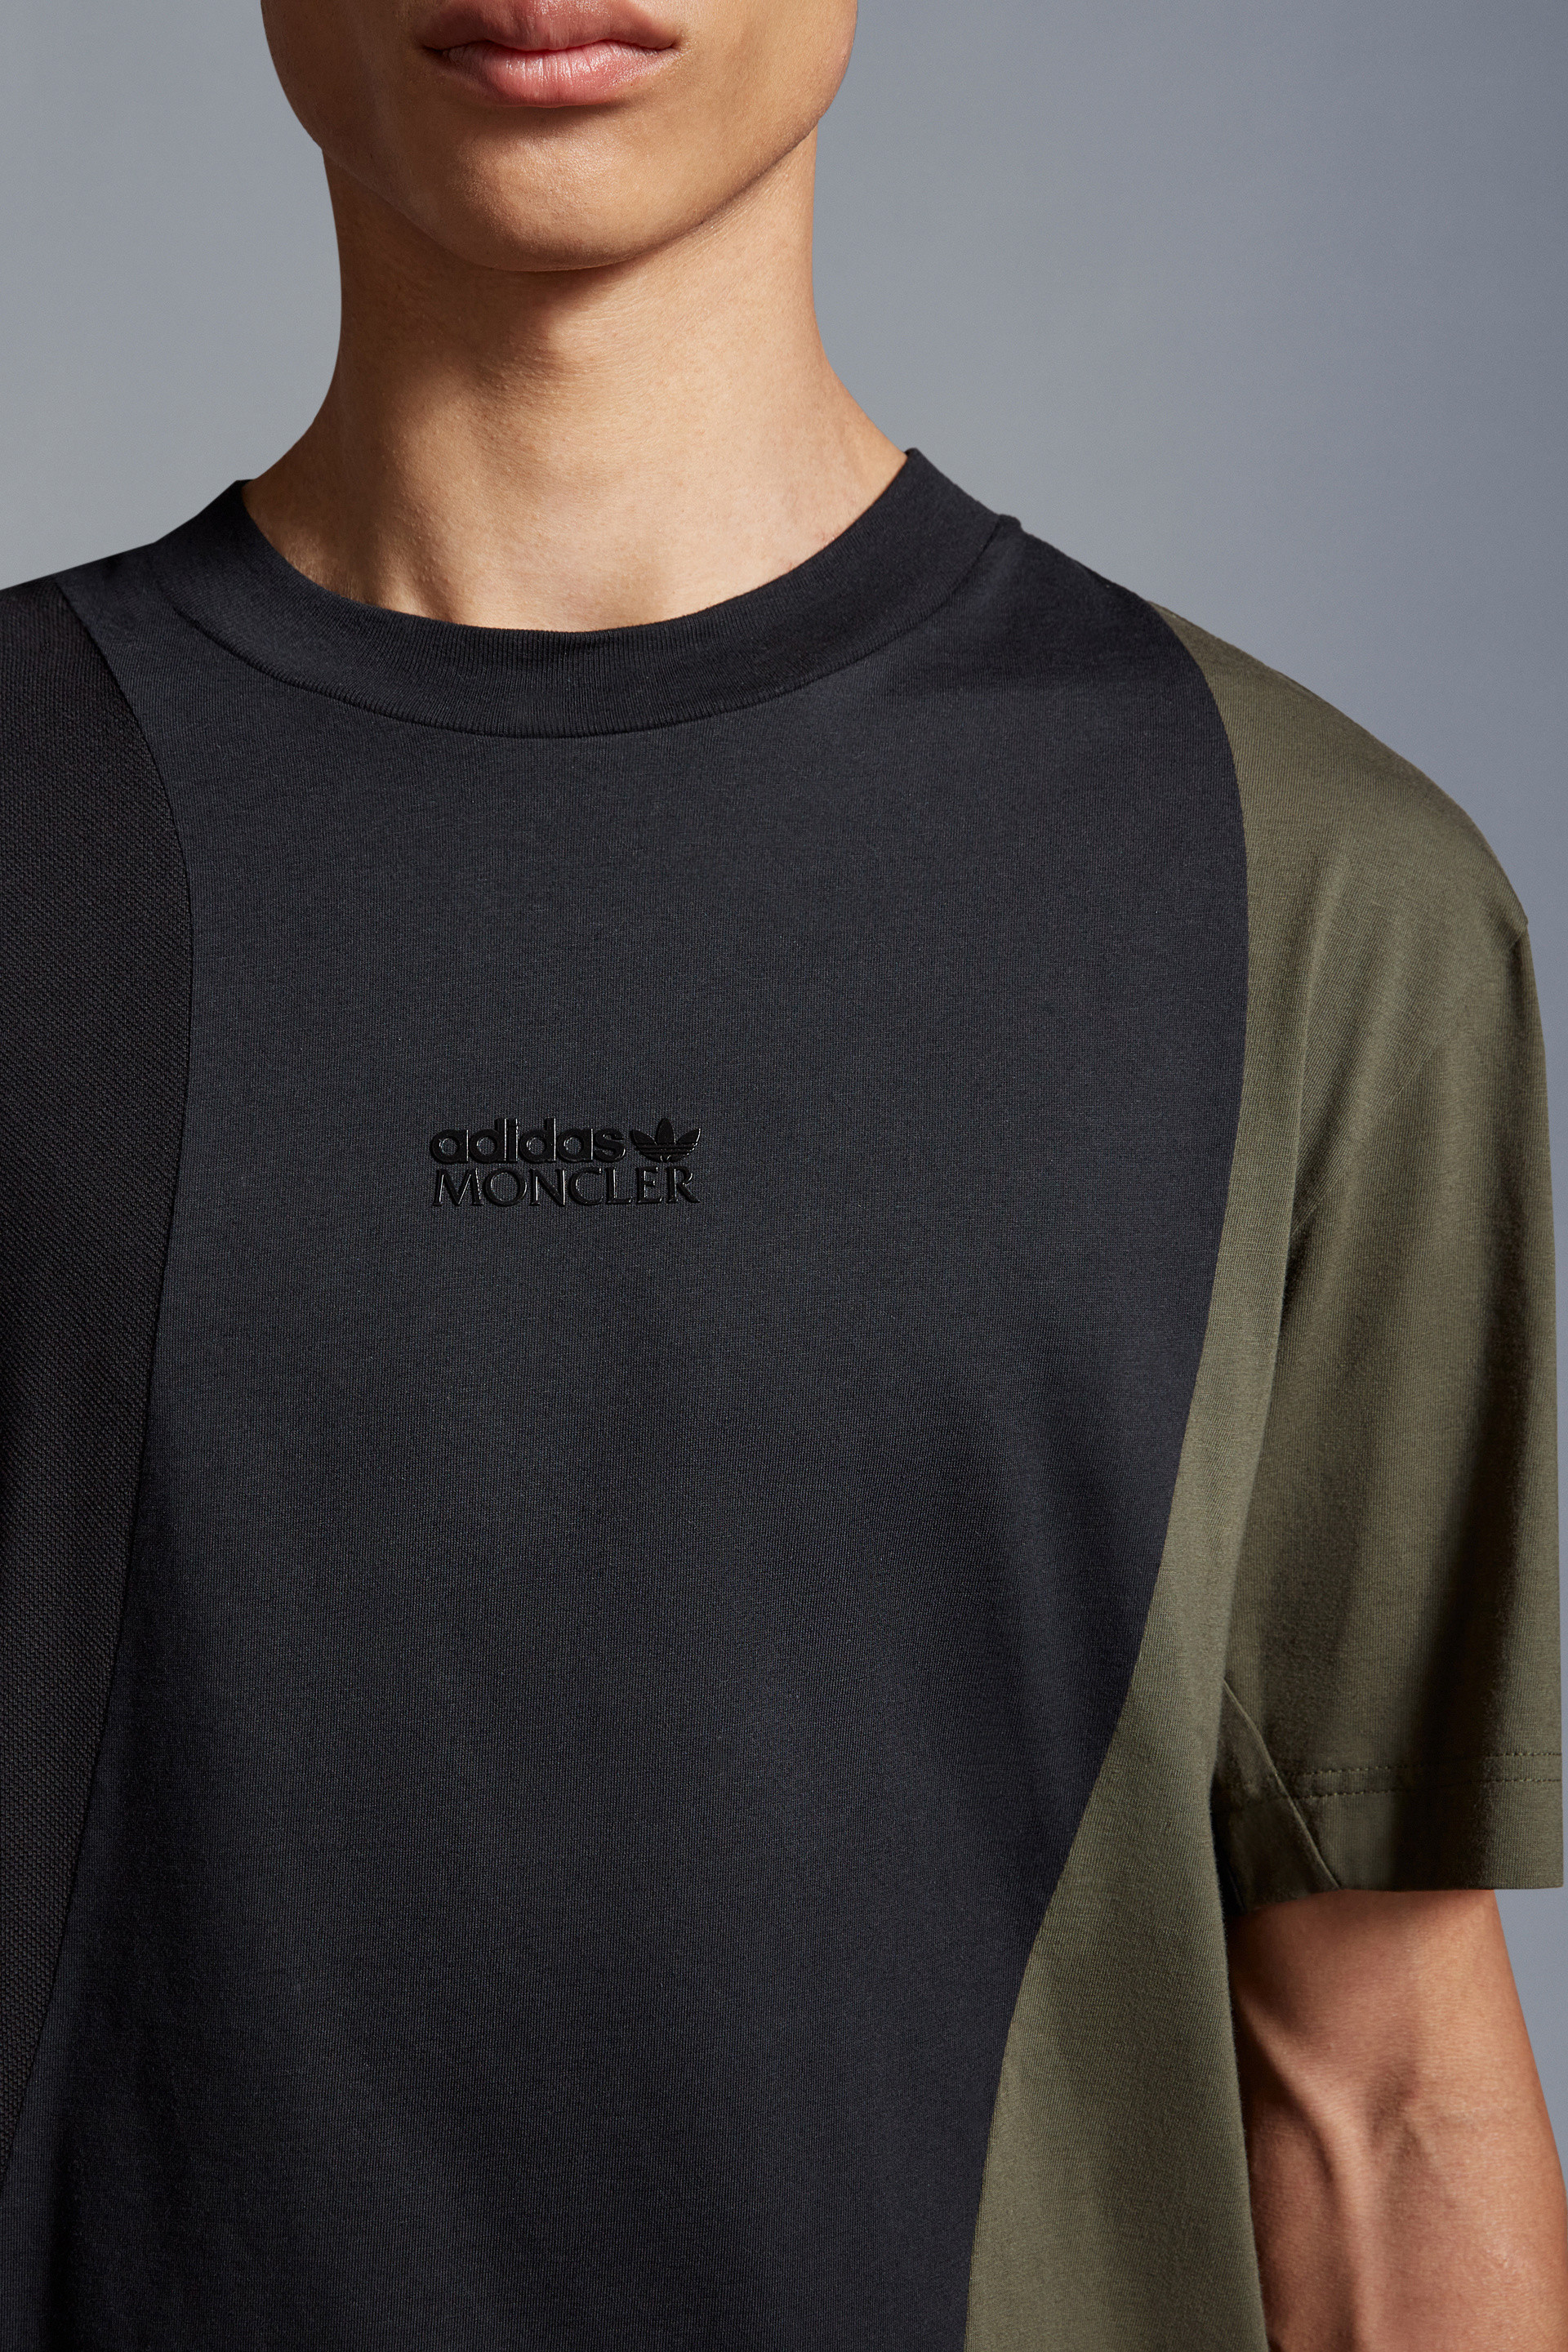 ブラック& グリーン Tシャツ : Moncler x adidas Originals 向けの 